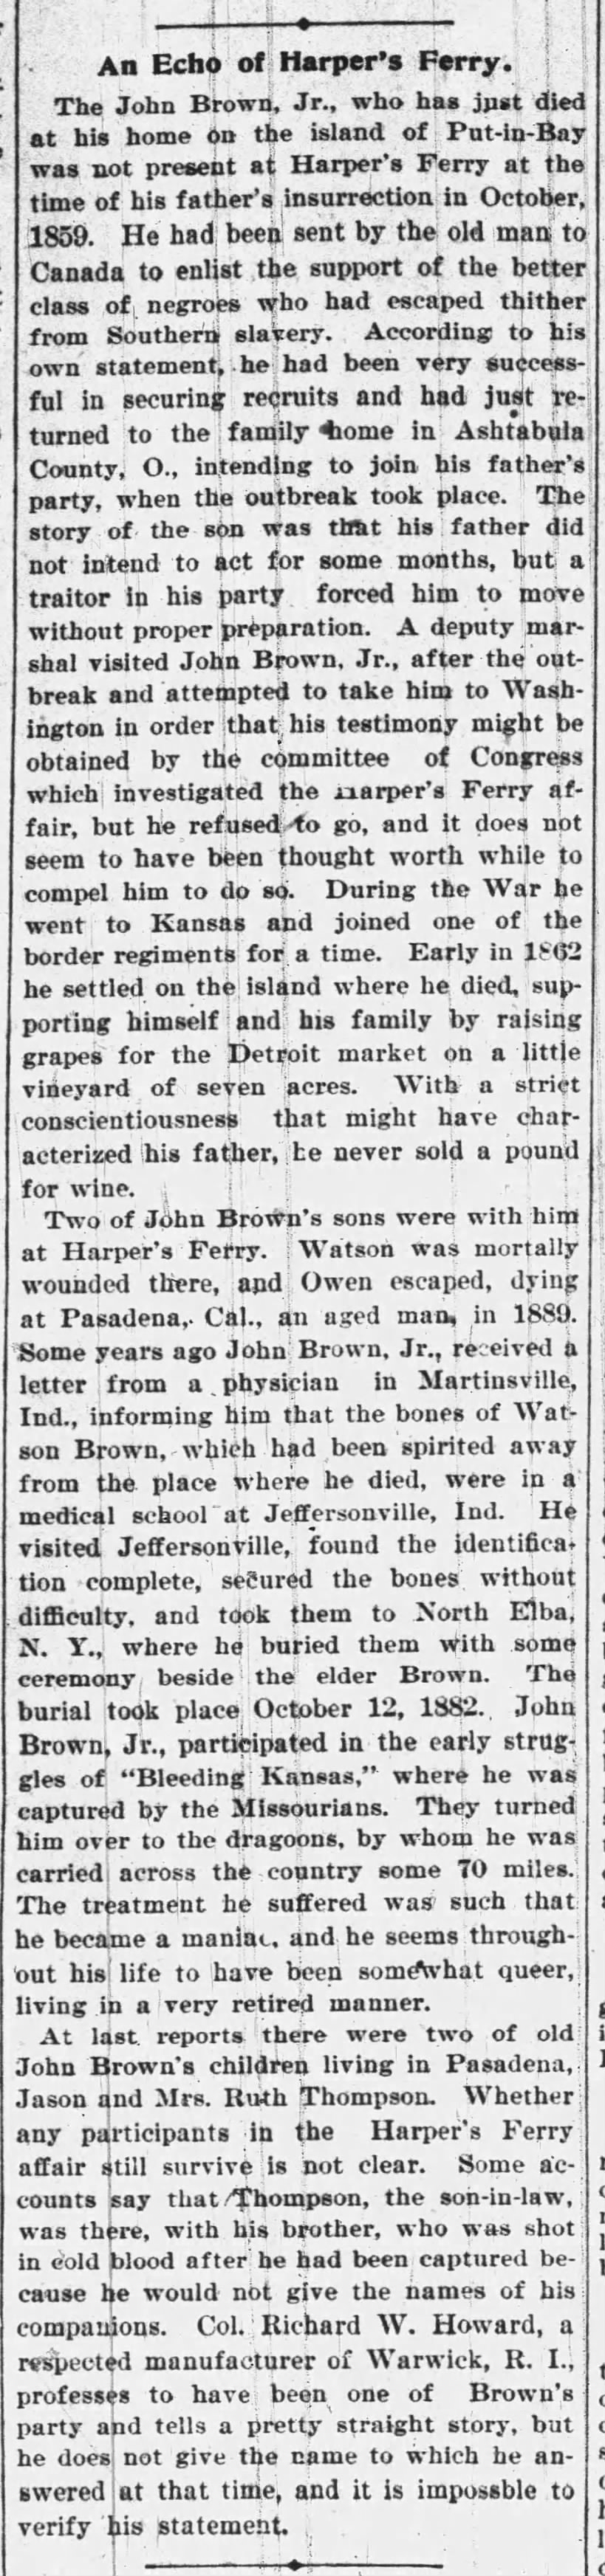 Death of John Brown Jr.